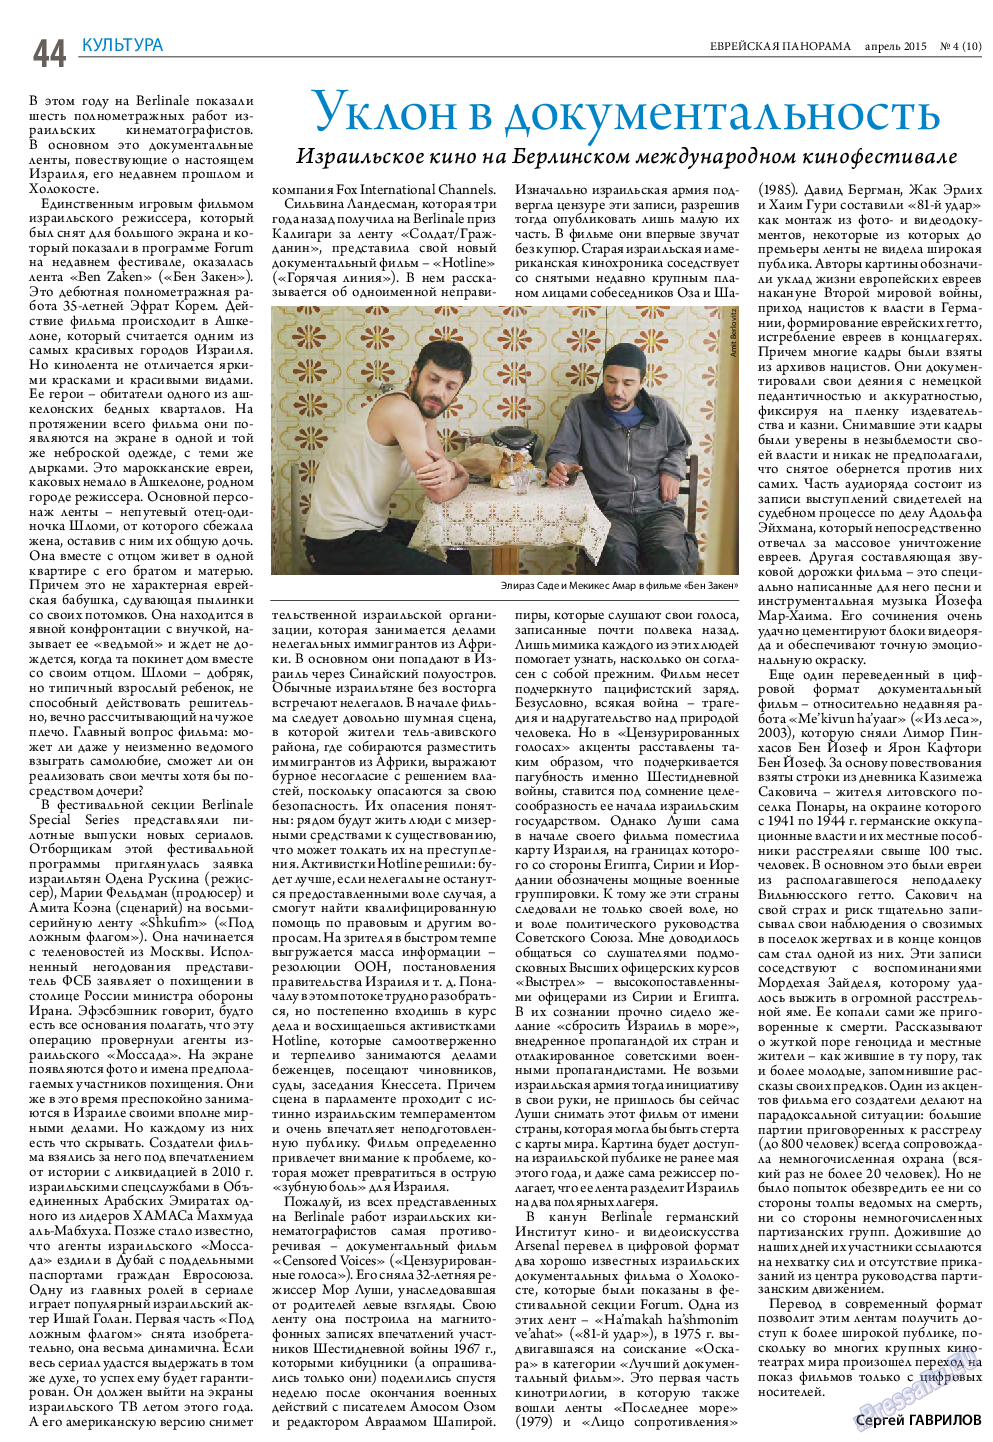 Еврейская панорама (газета). 2015 год, номер 4, стр. 44